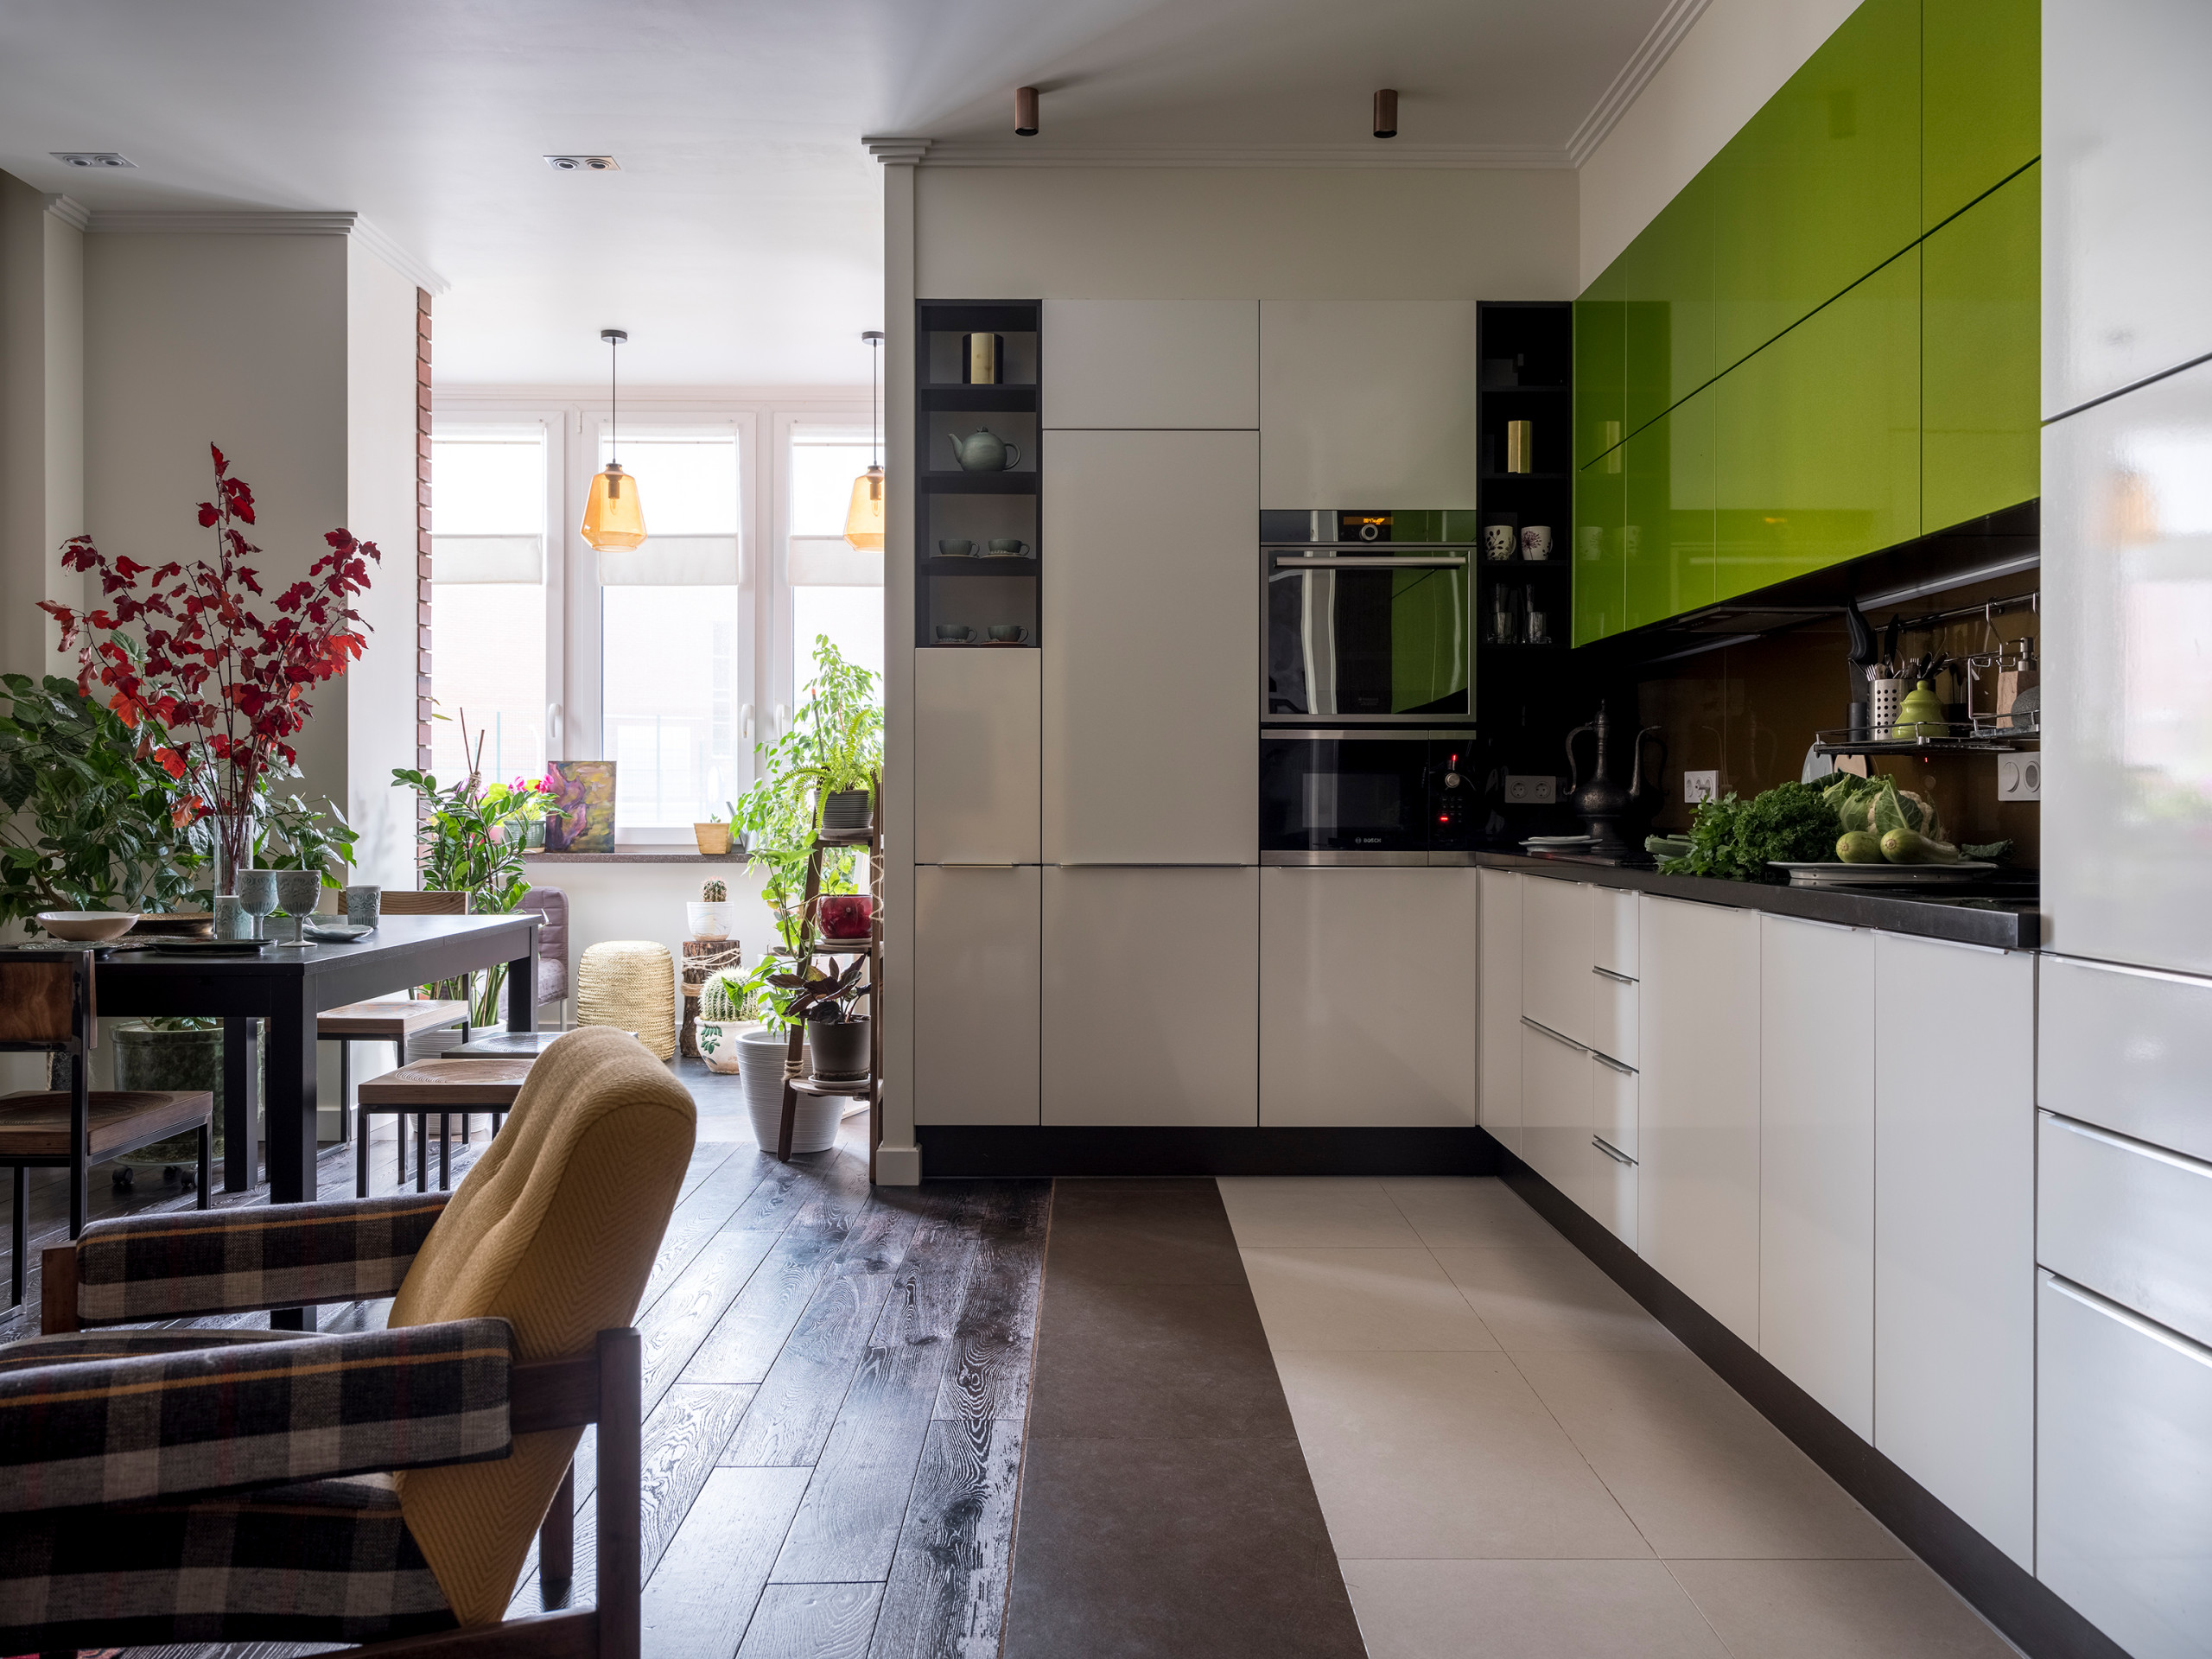 Дизайн кухни гостиной: 20 метров ∾ Тренды 